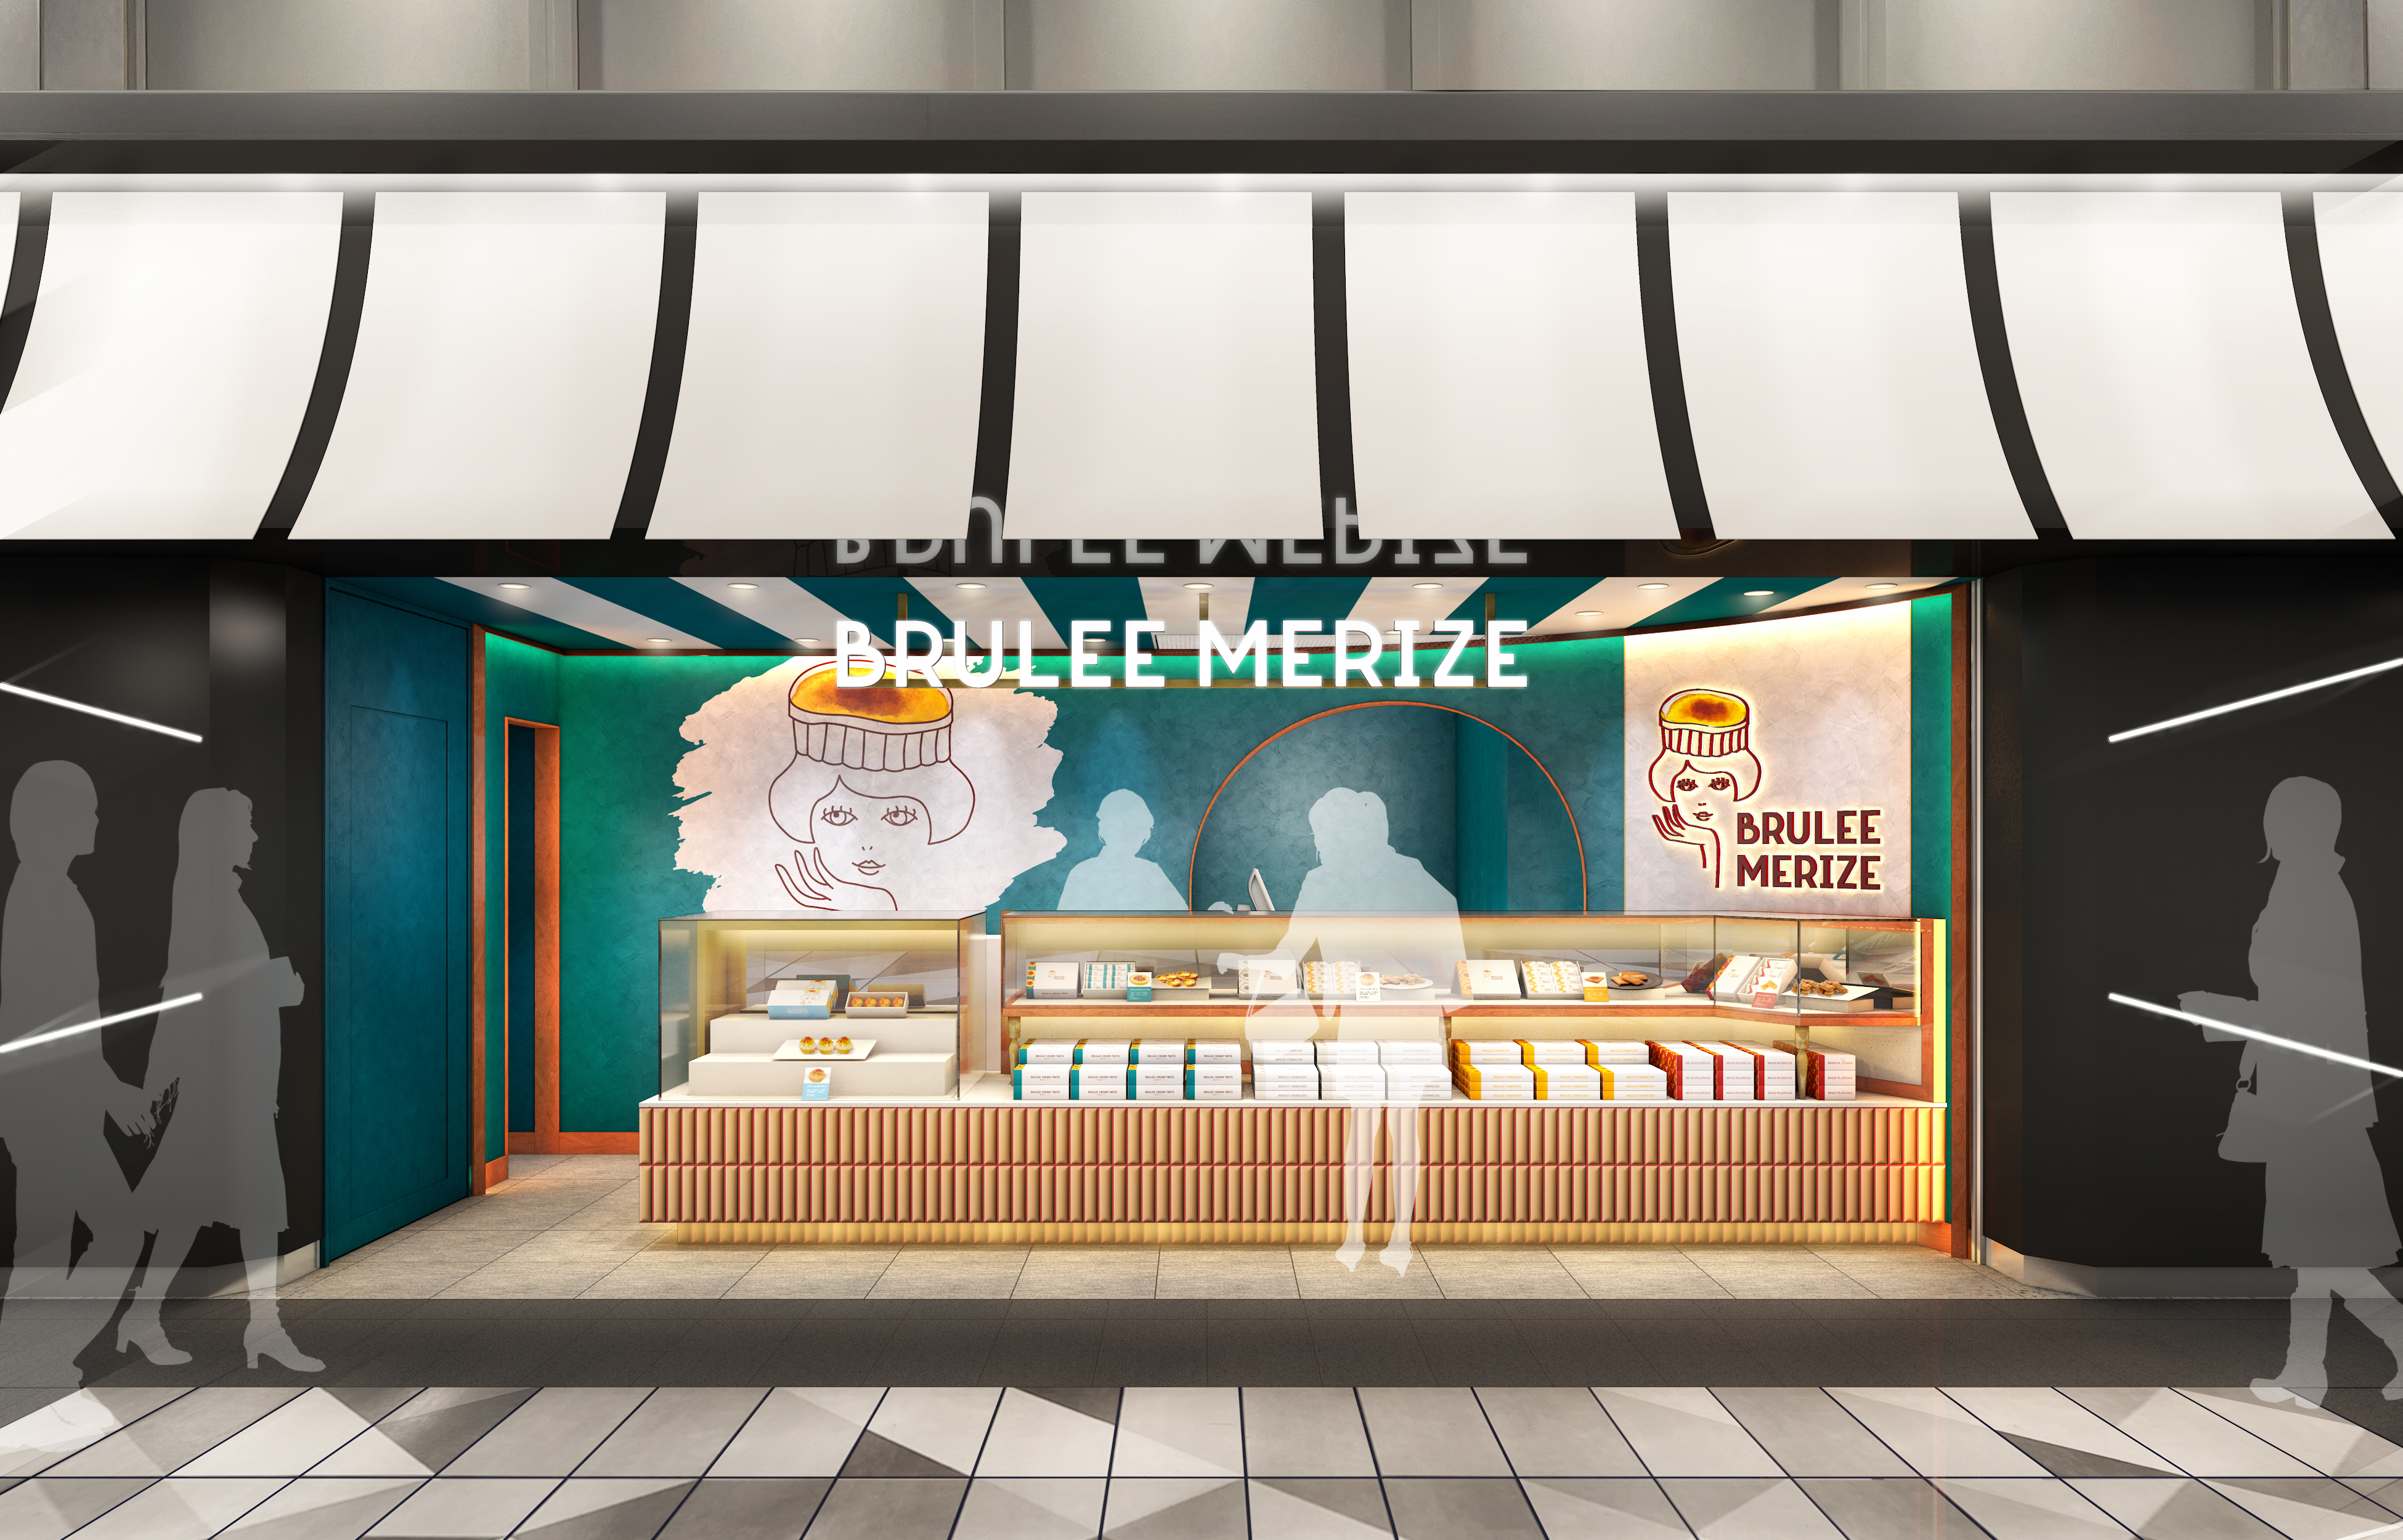 ブリュレスイーツ専門店の新ブランド『ブリュレメリゼ』から生ブリュレケーキが登場！全国初となる1号店がJR東京駅に7月21日(金)いよいよOPENのサブ画像9_※店舗デザインは変更になる場合があります。